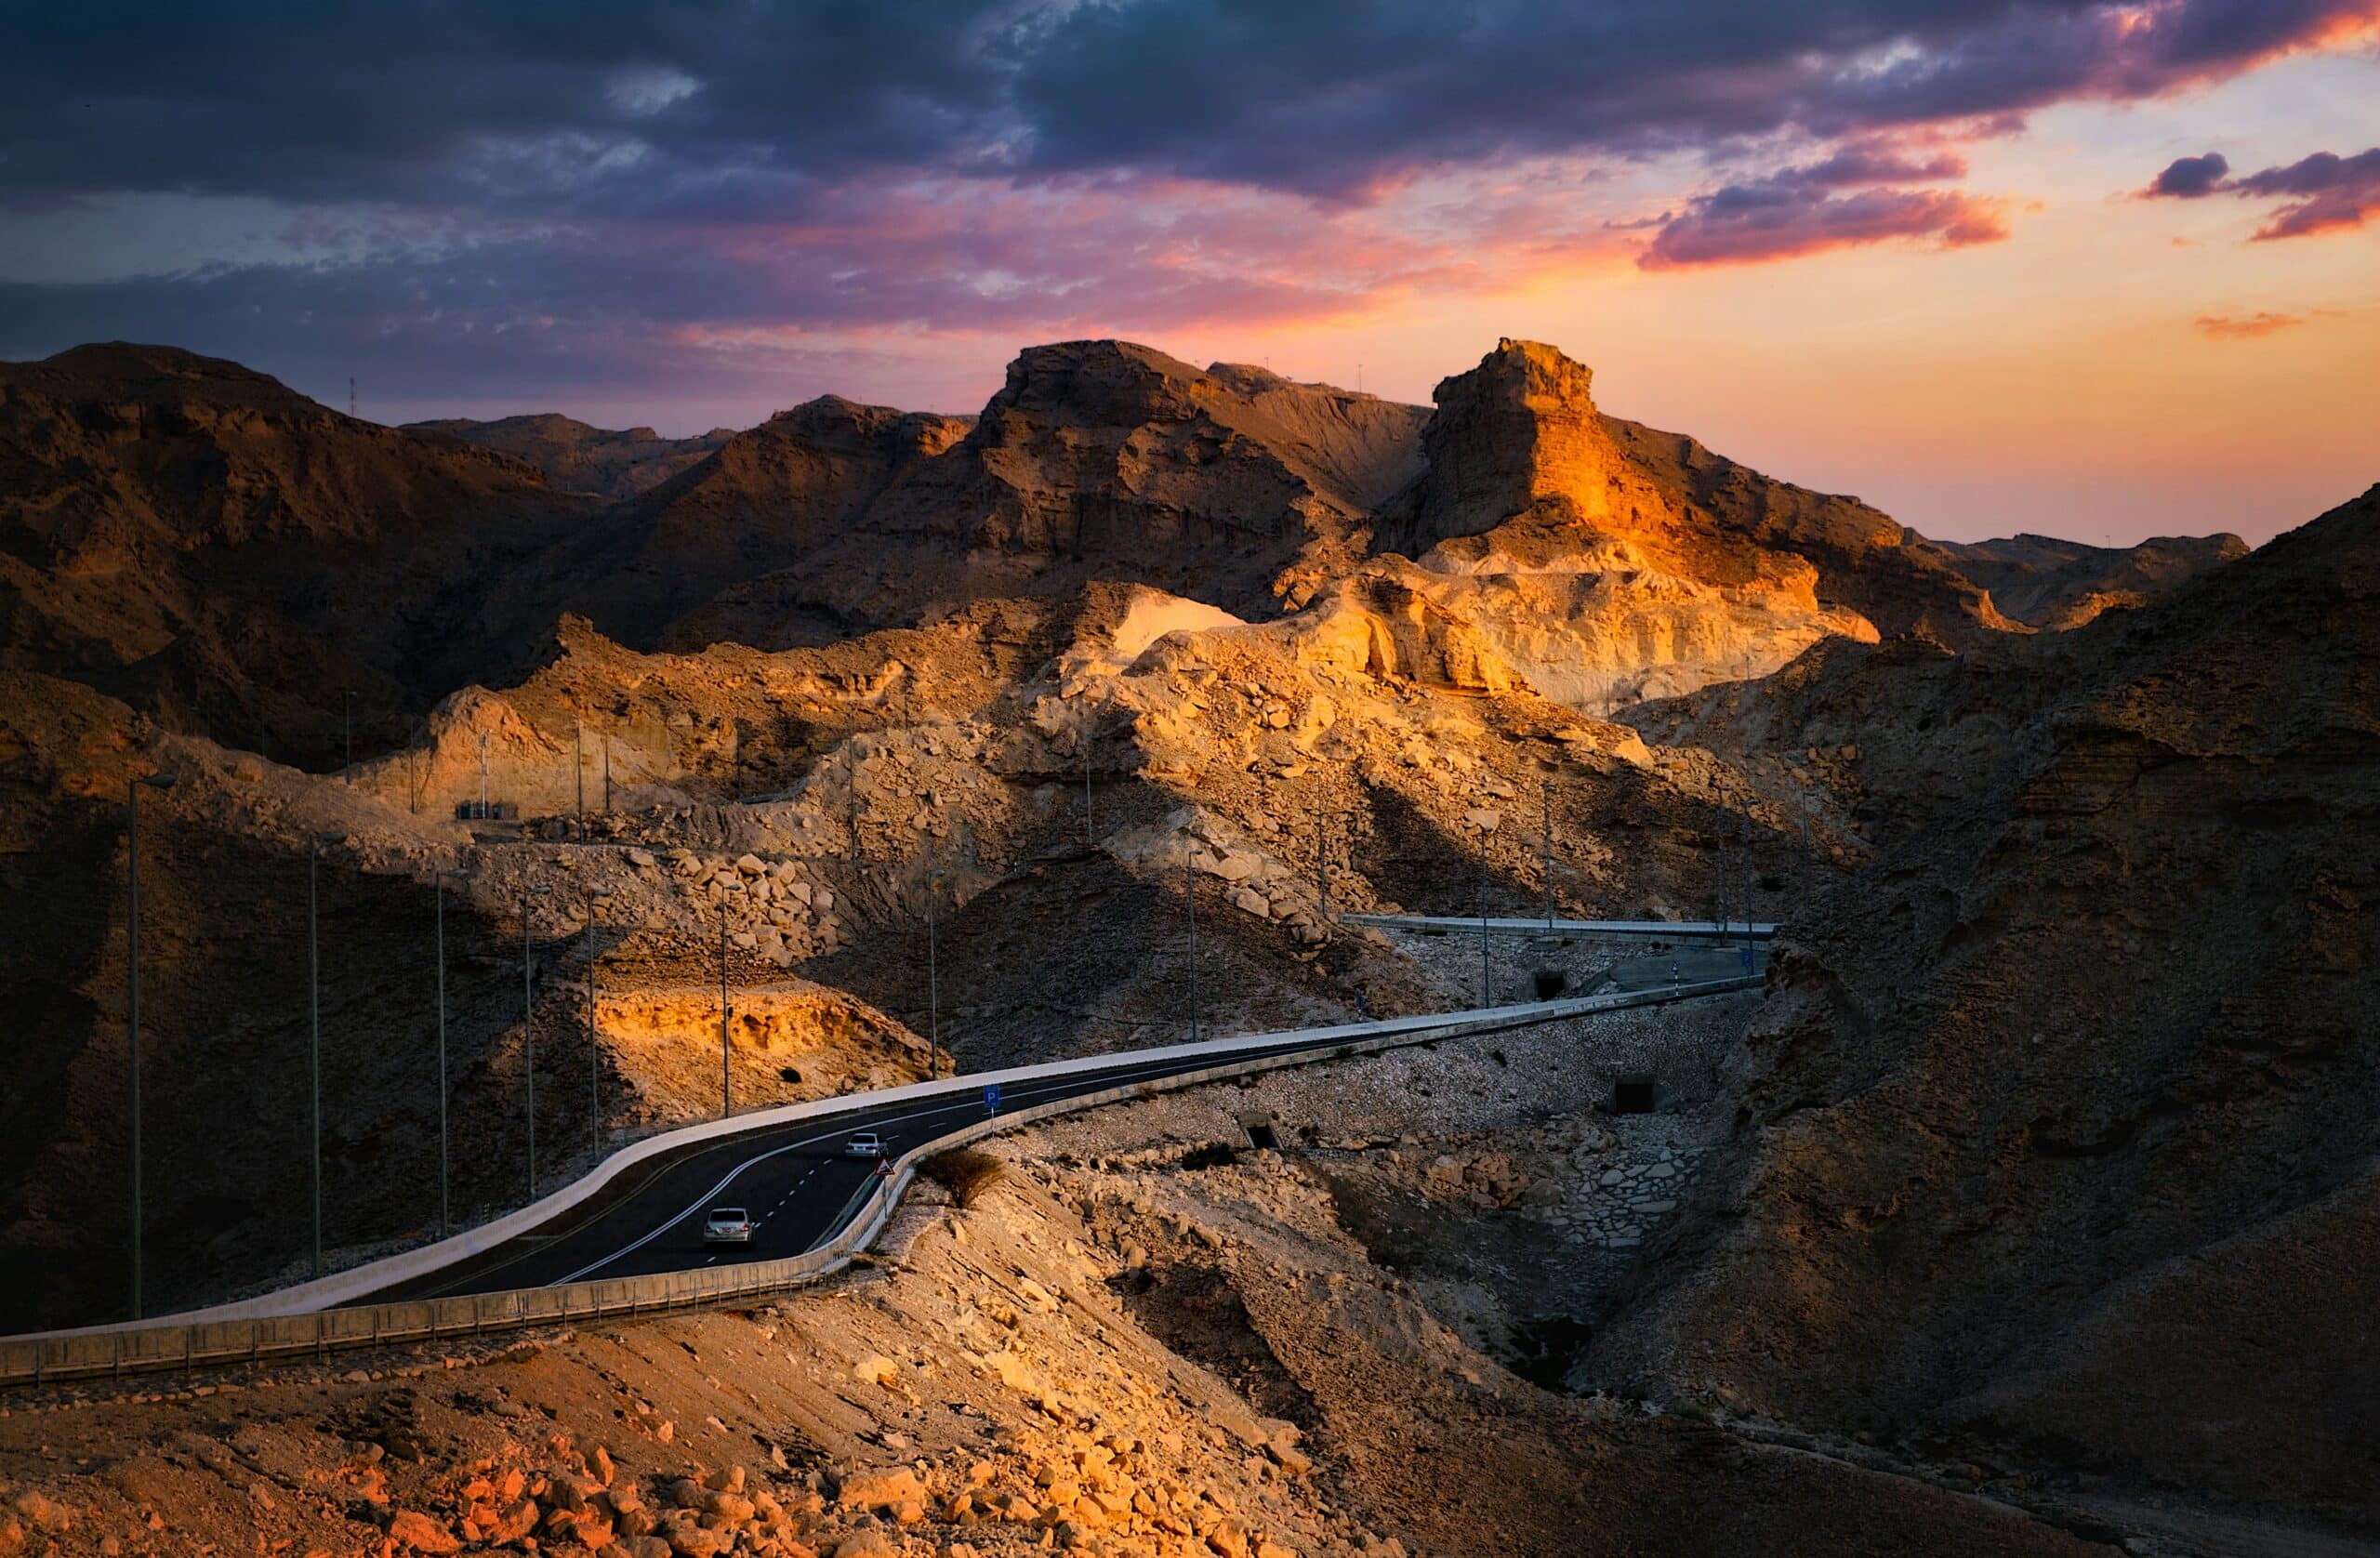 Montanhas rochosas Jebel Hafeet cortadas por uma estrada de asfalto